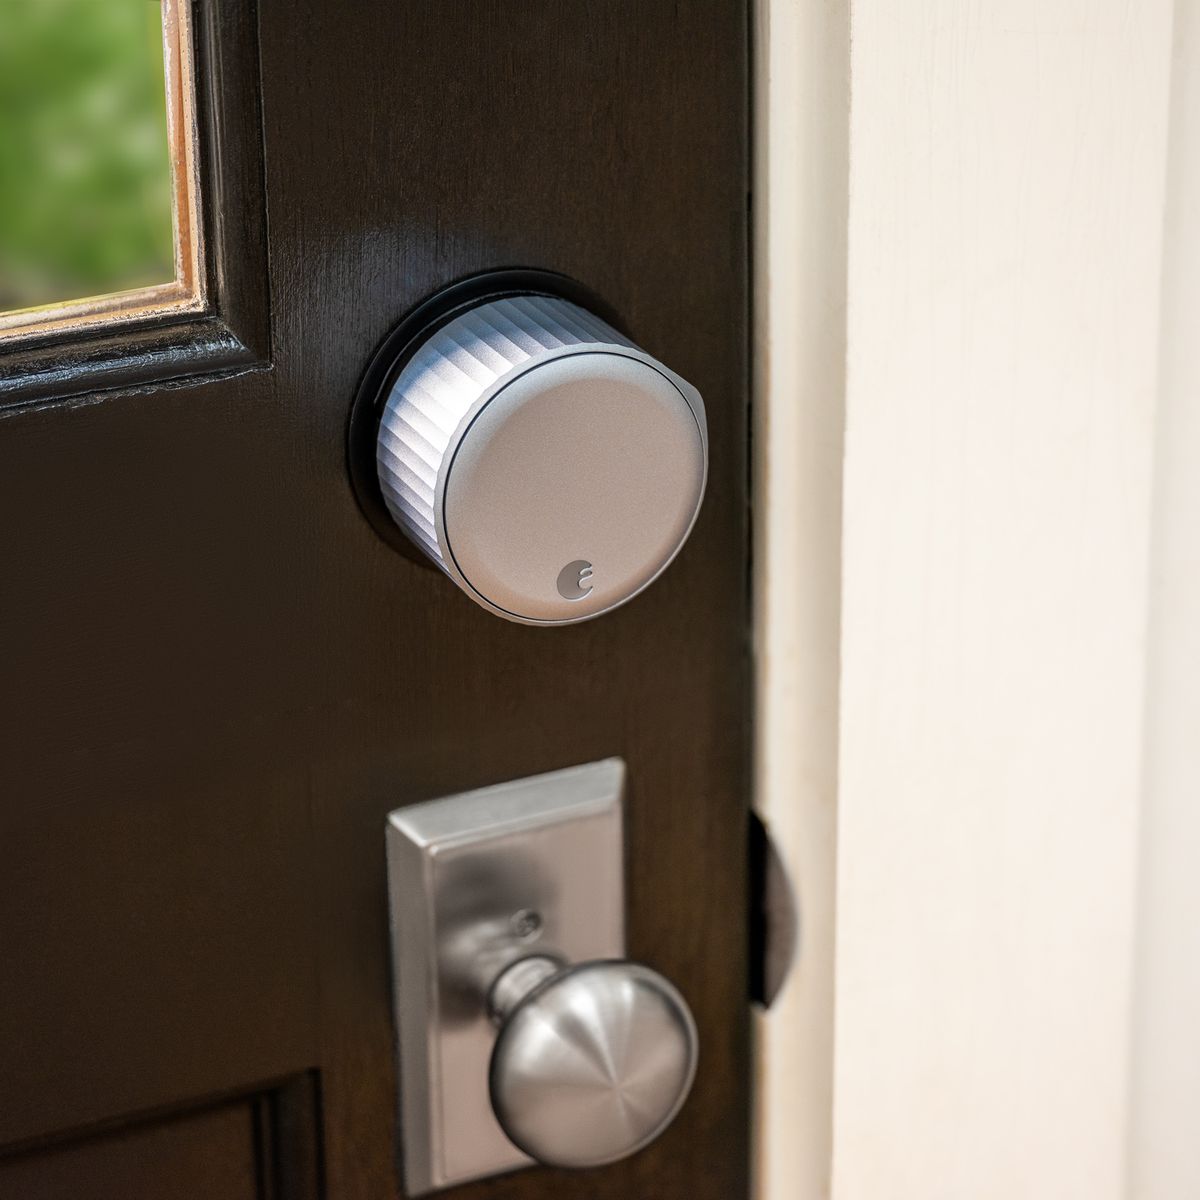 August Wi-Fi Smart Lock instalado en puerta marrón